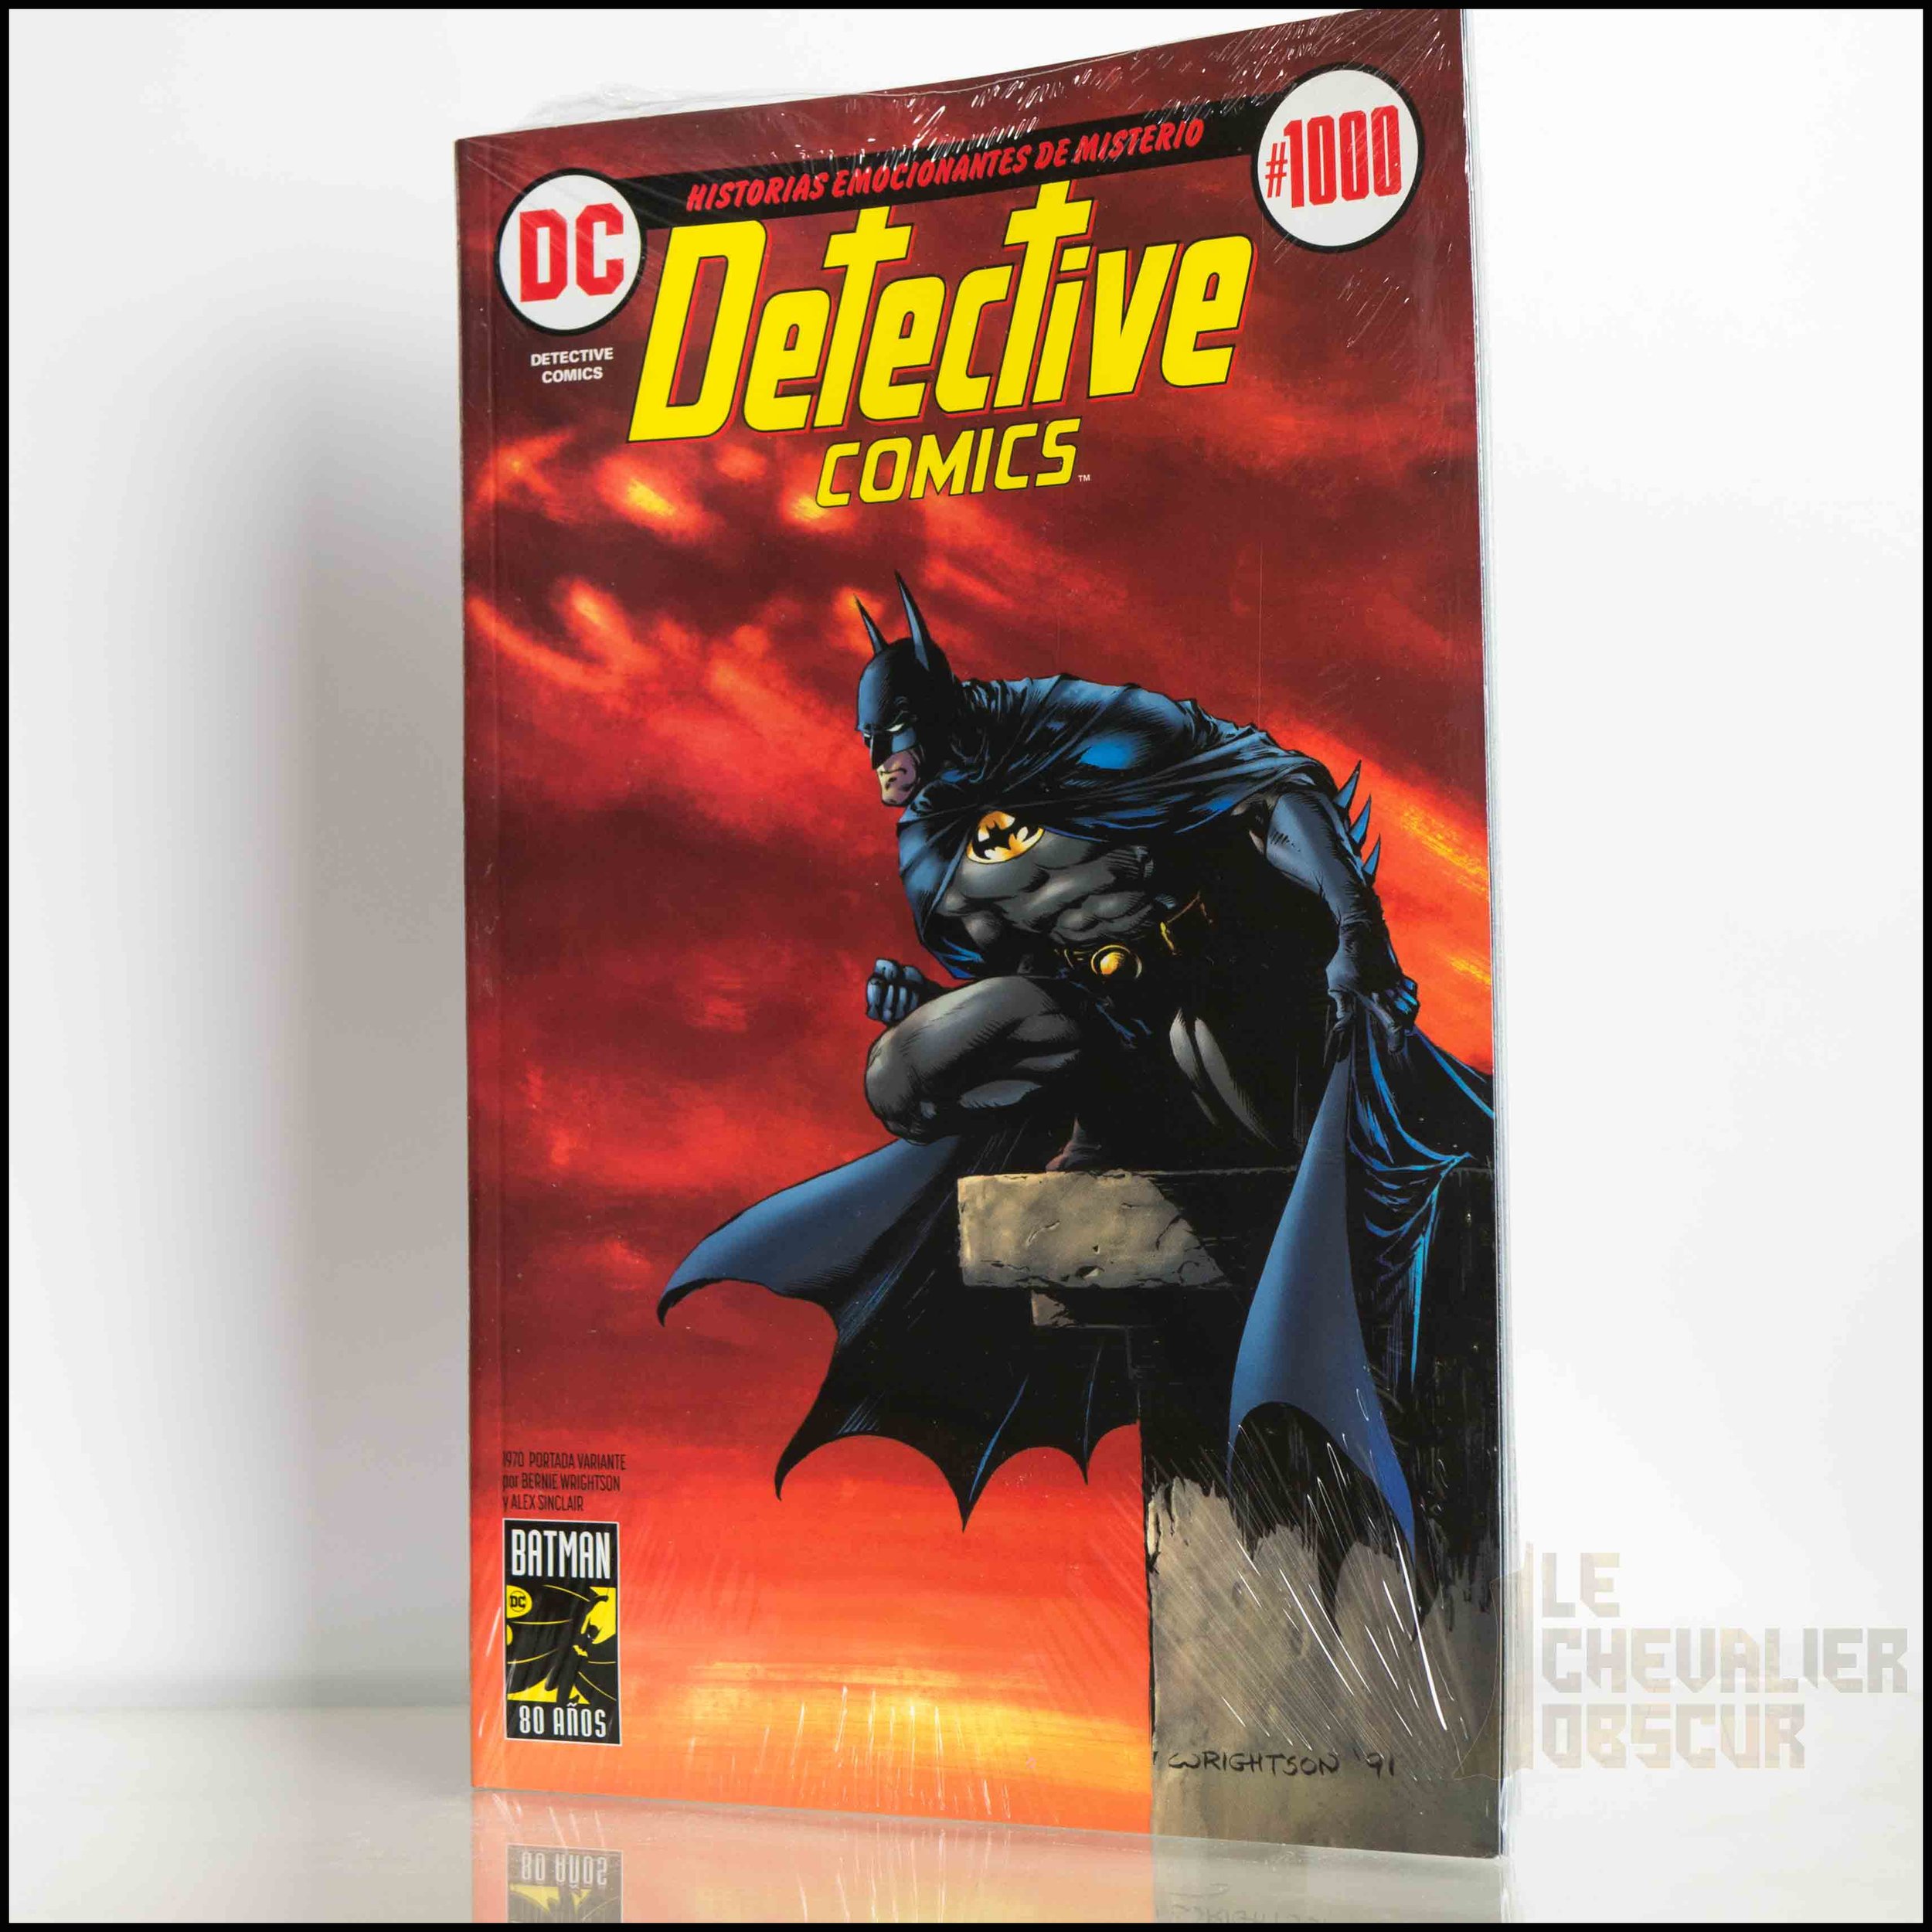 Batman 1000 | Portada años 70 — Le Chevalier Obscur